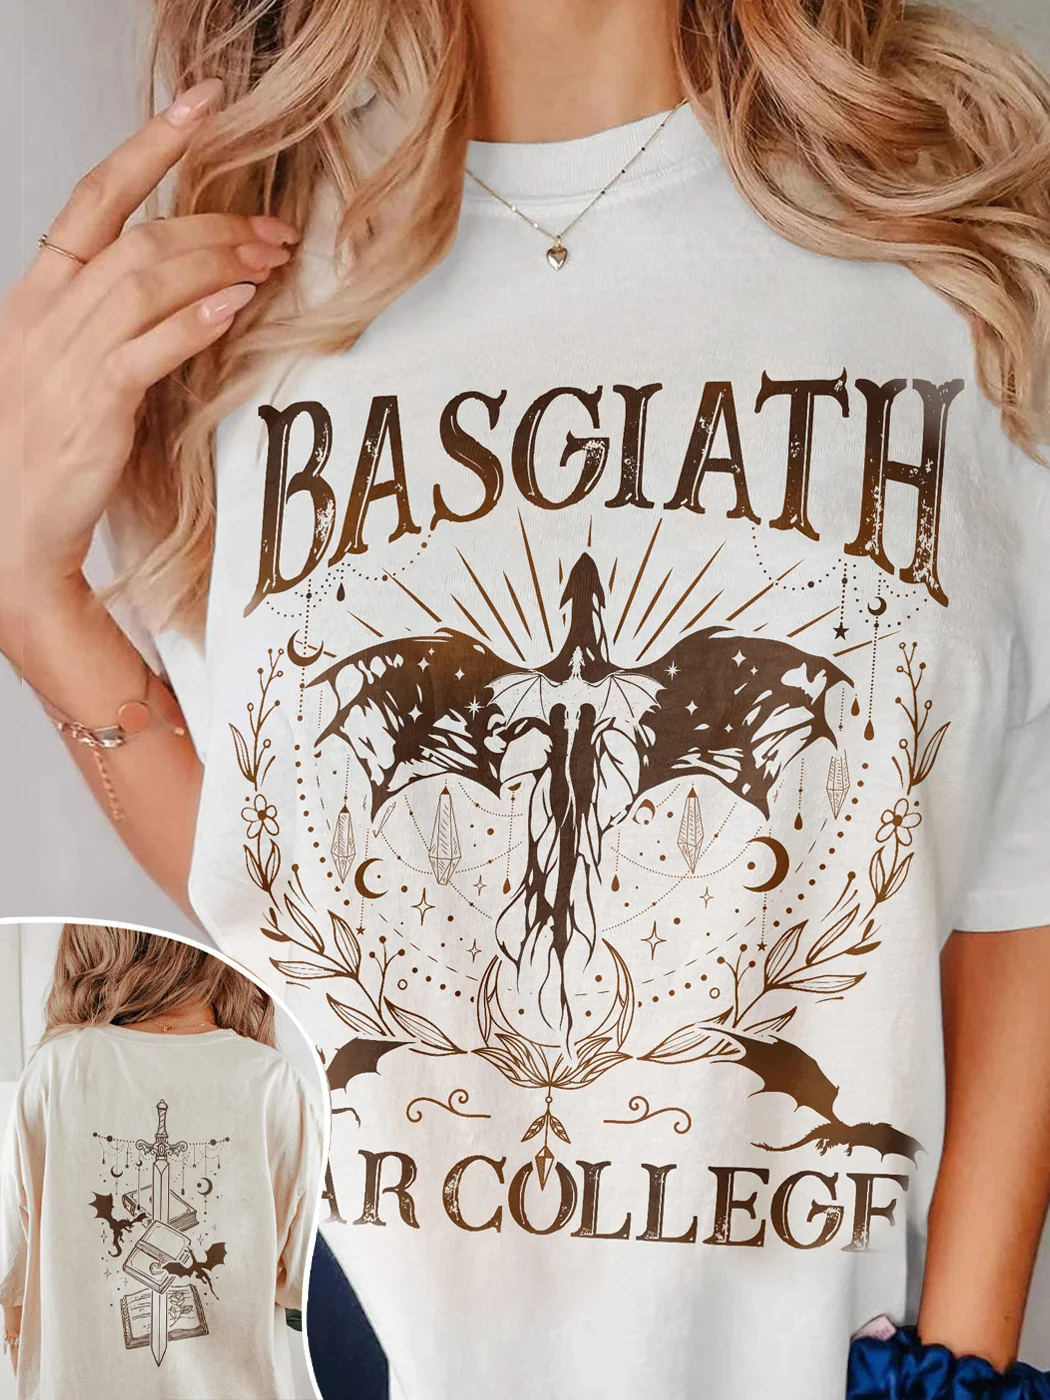 Basgiath War College Patten Shirt / DarkAcademias /Darkacademias